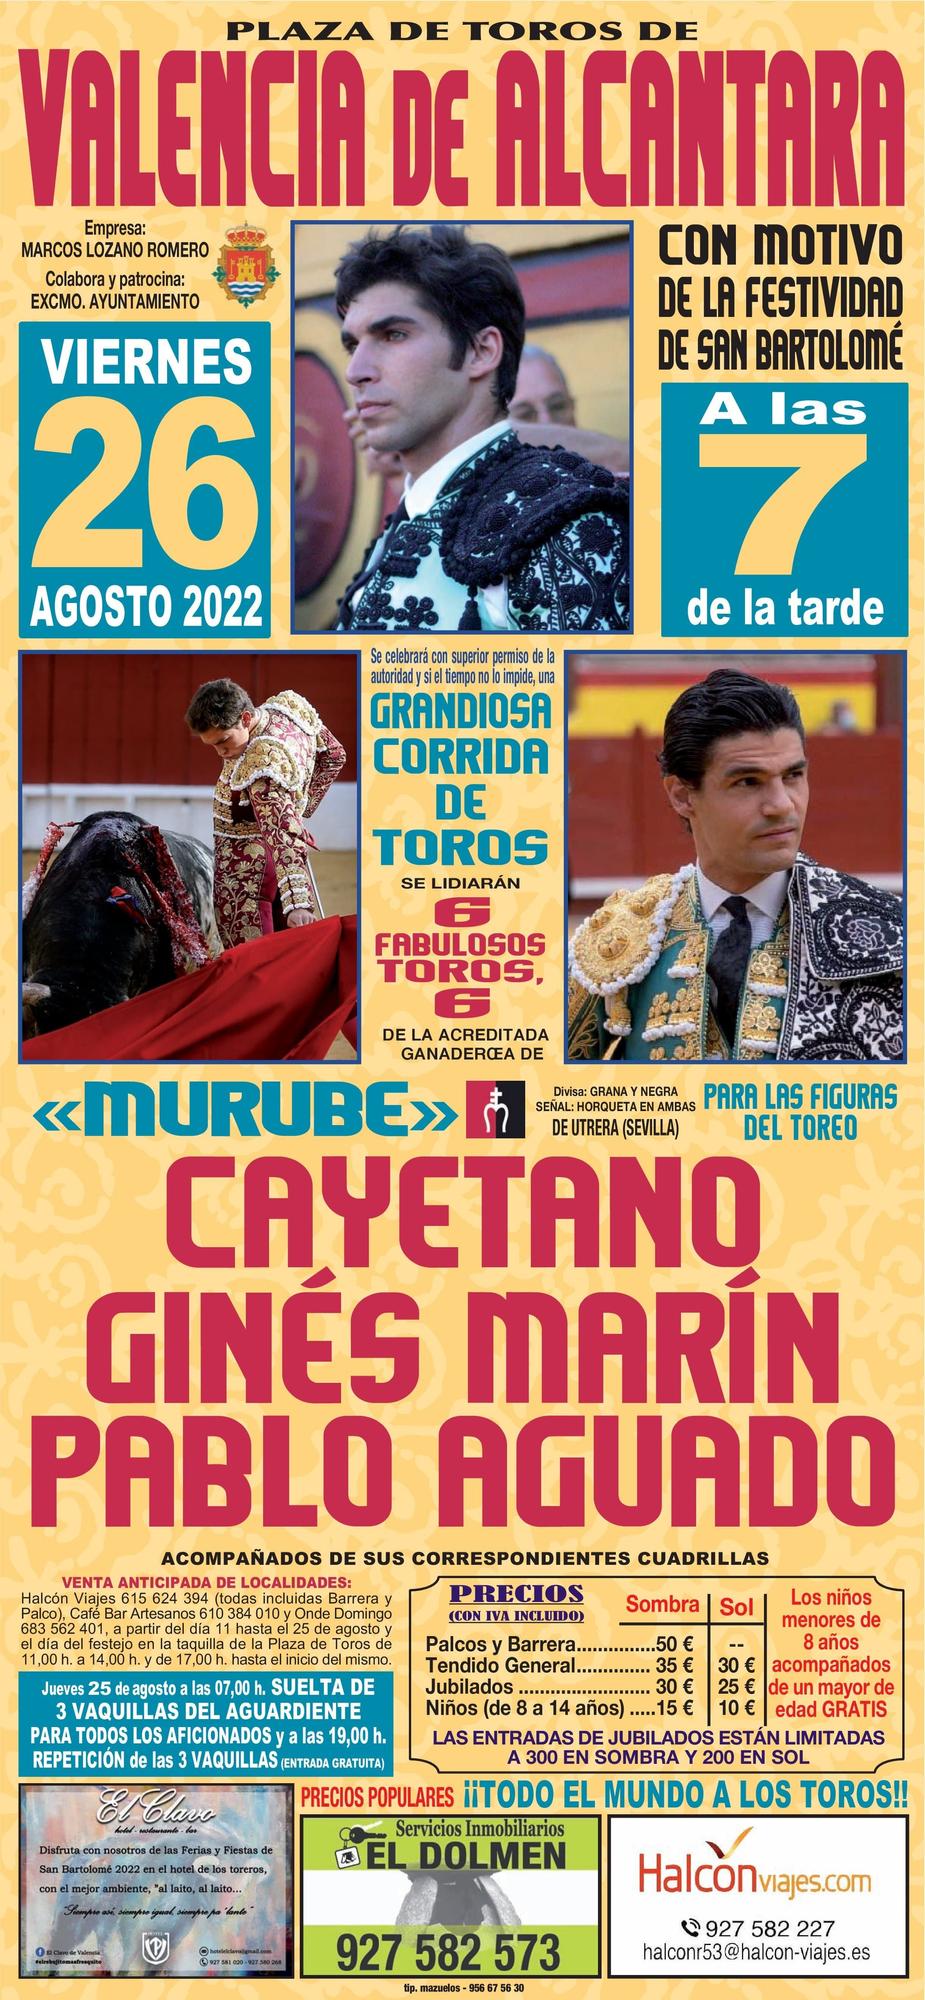 Cartel de espectáculos taurinos en San Bartolomé 2022.